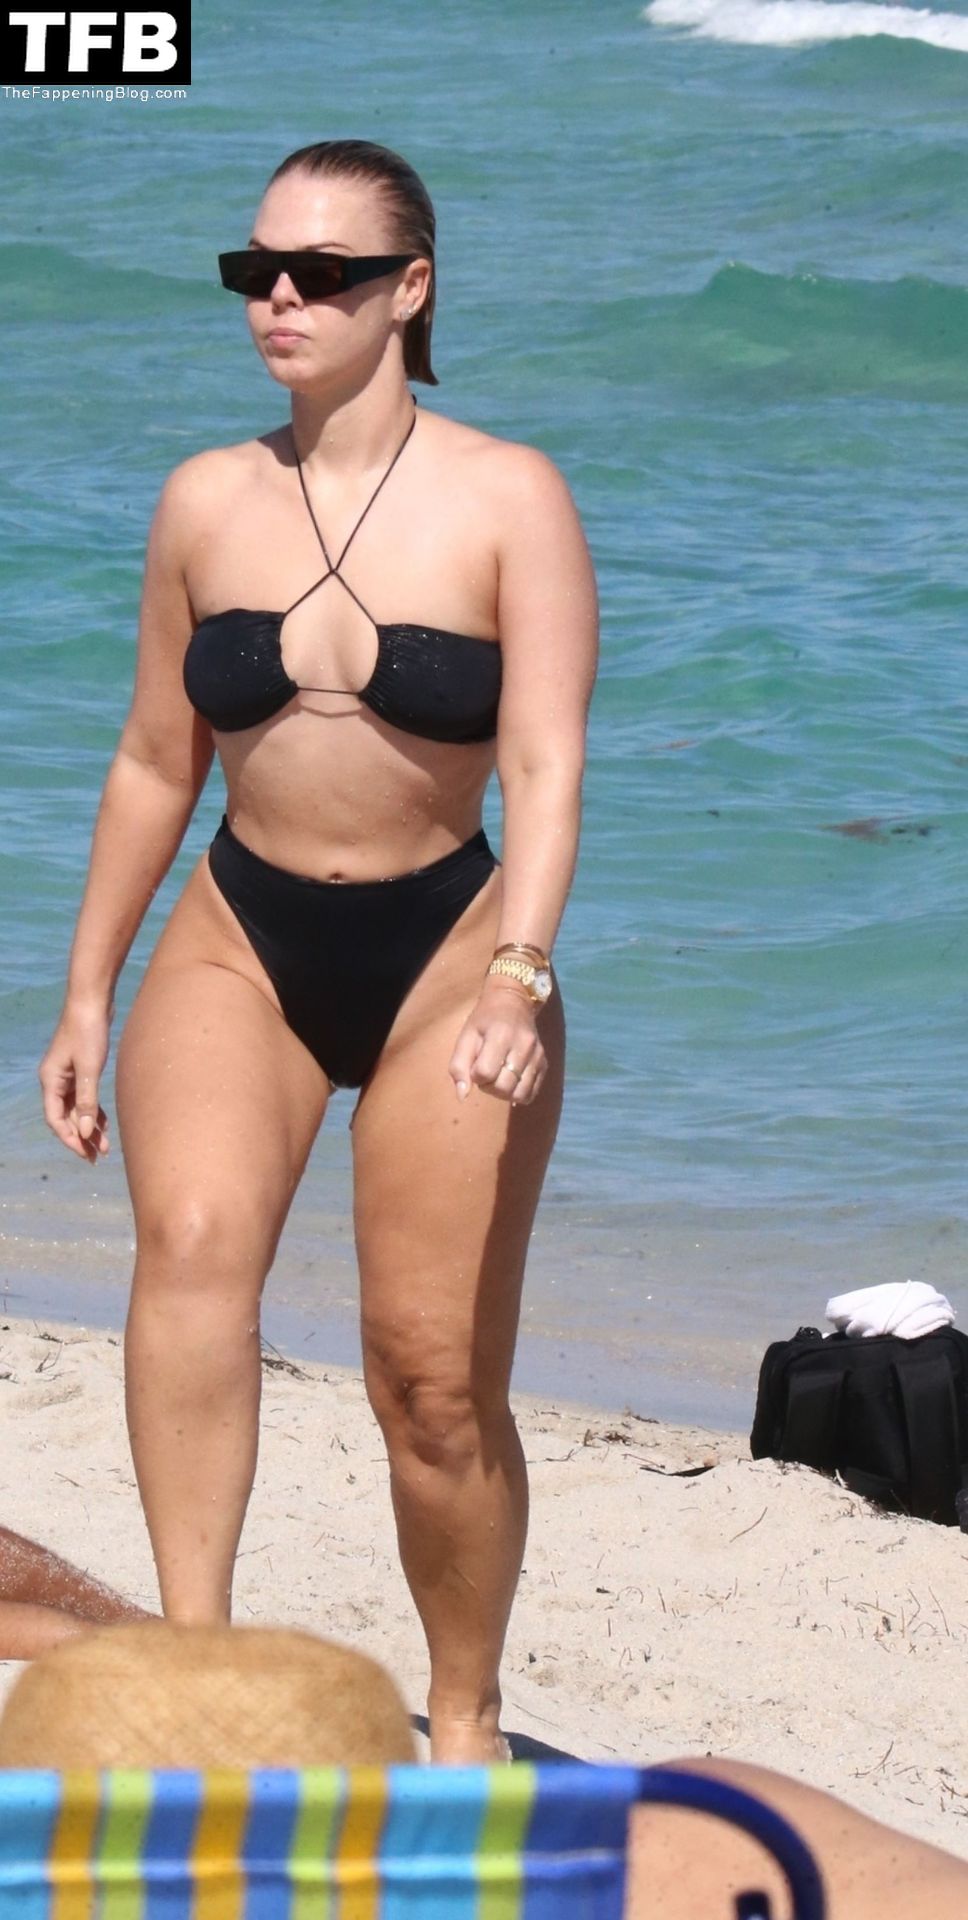 Bianca Elouise Flaunts Her Sensational Beach Body in a Bikini (24 Photos)